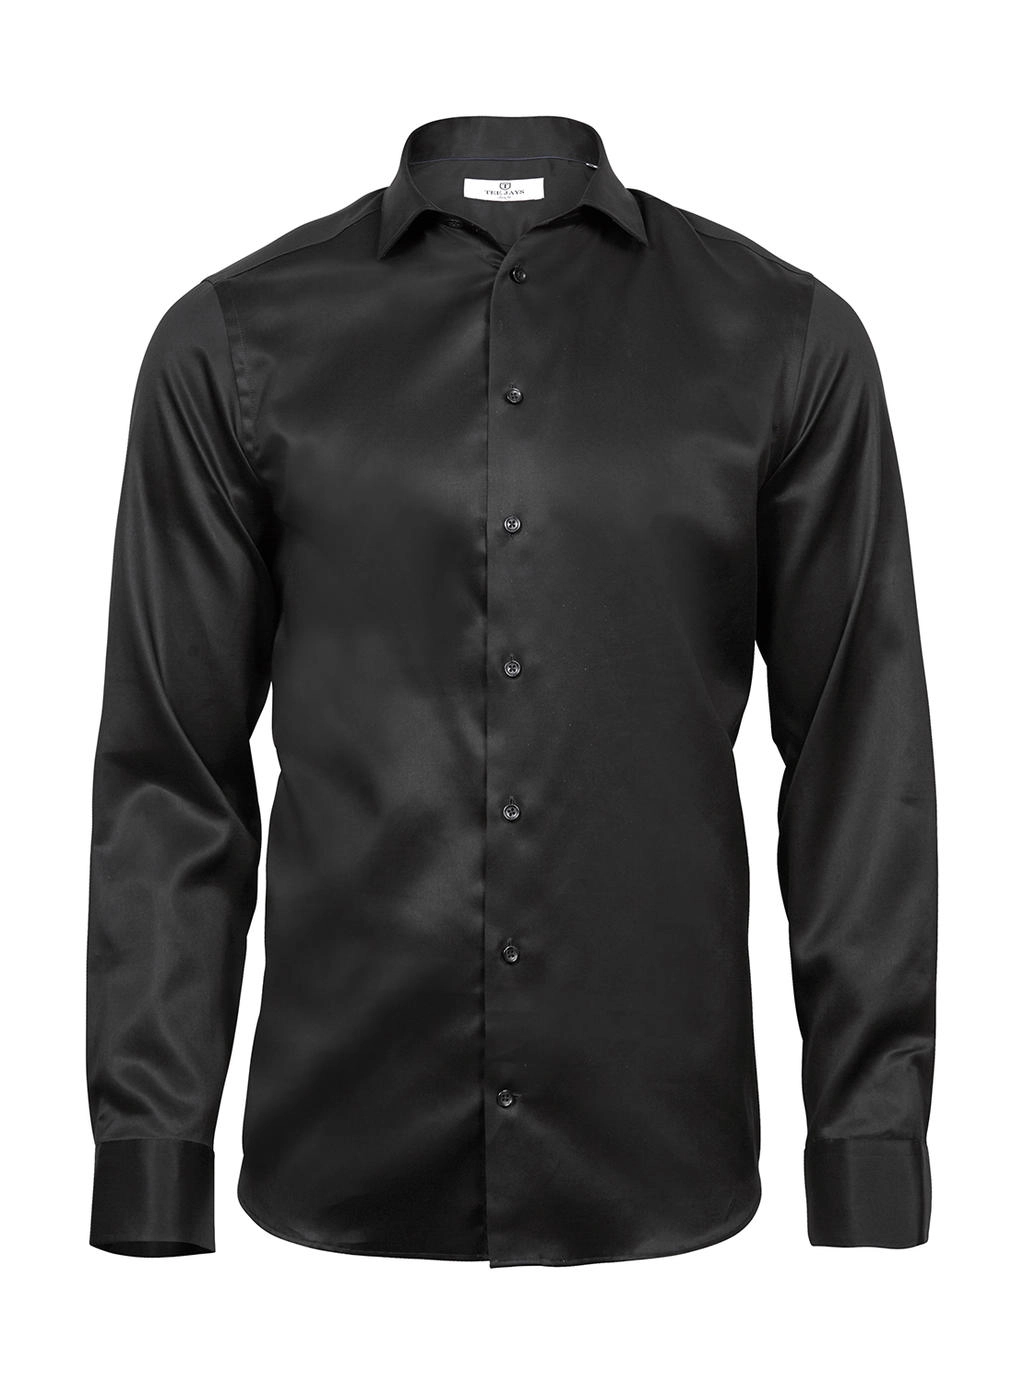 Luxury Shirt Slim Fit zum Besticken und Bedrucken in der Farbe Black mit Ihren Logo, Schriftzug oder Motiv.